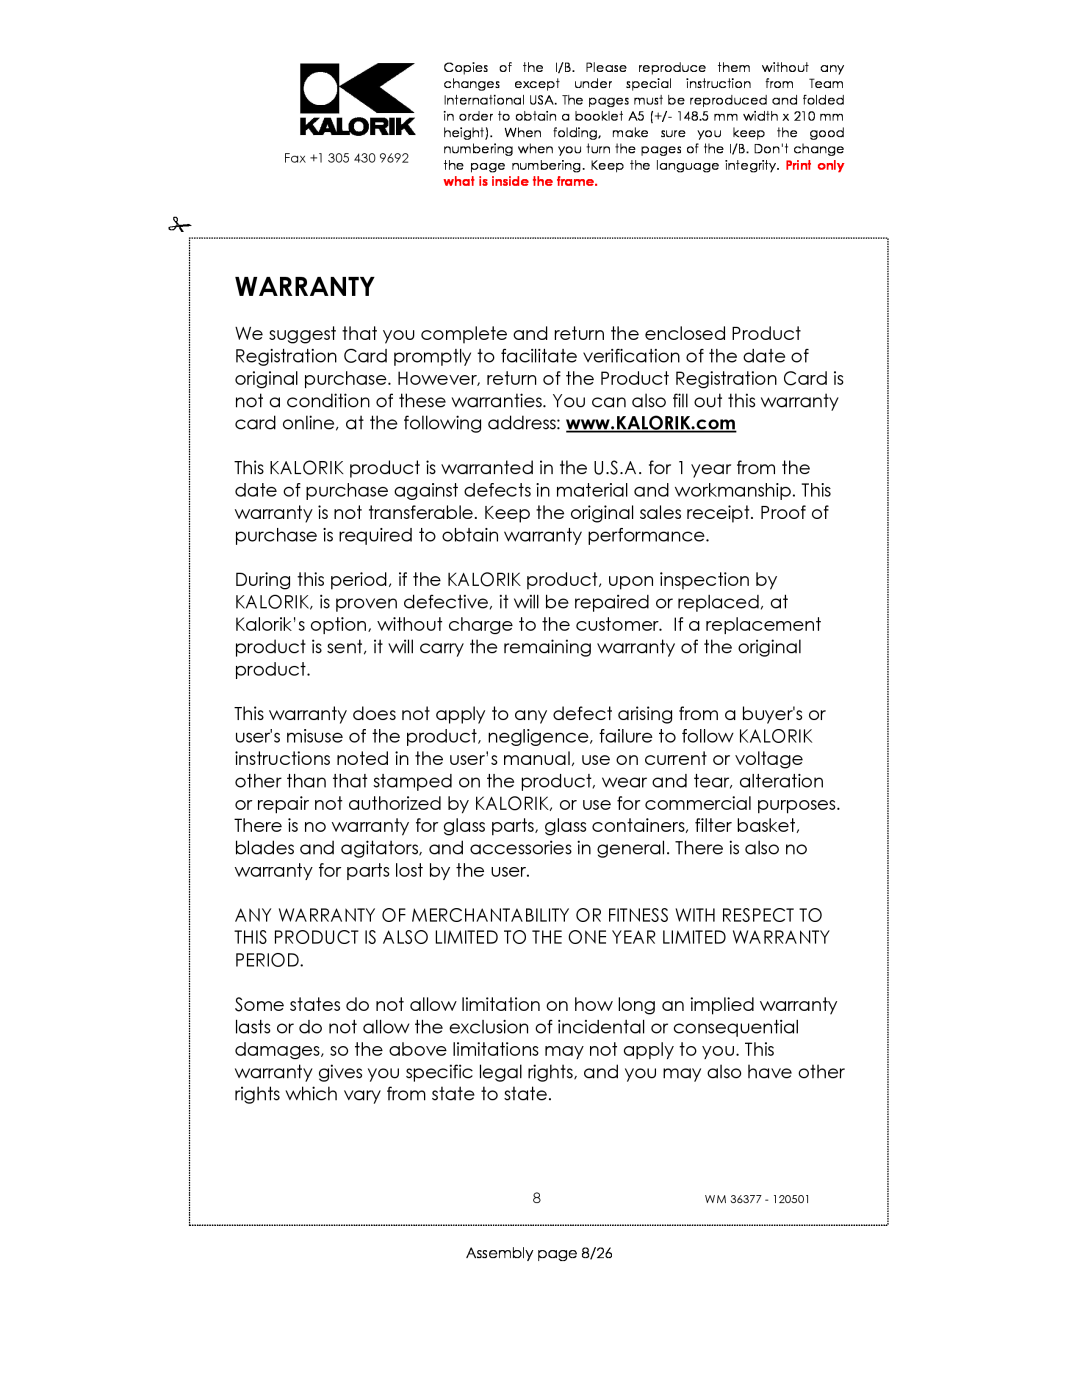 Kalorik WM 36377 manual Warranty, Assembly page 8/26 